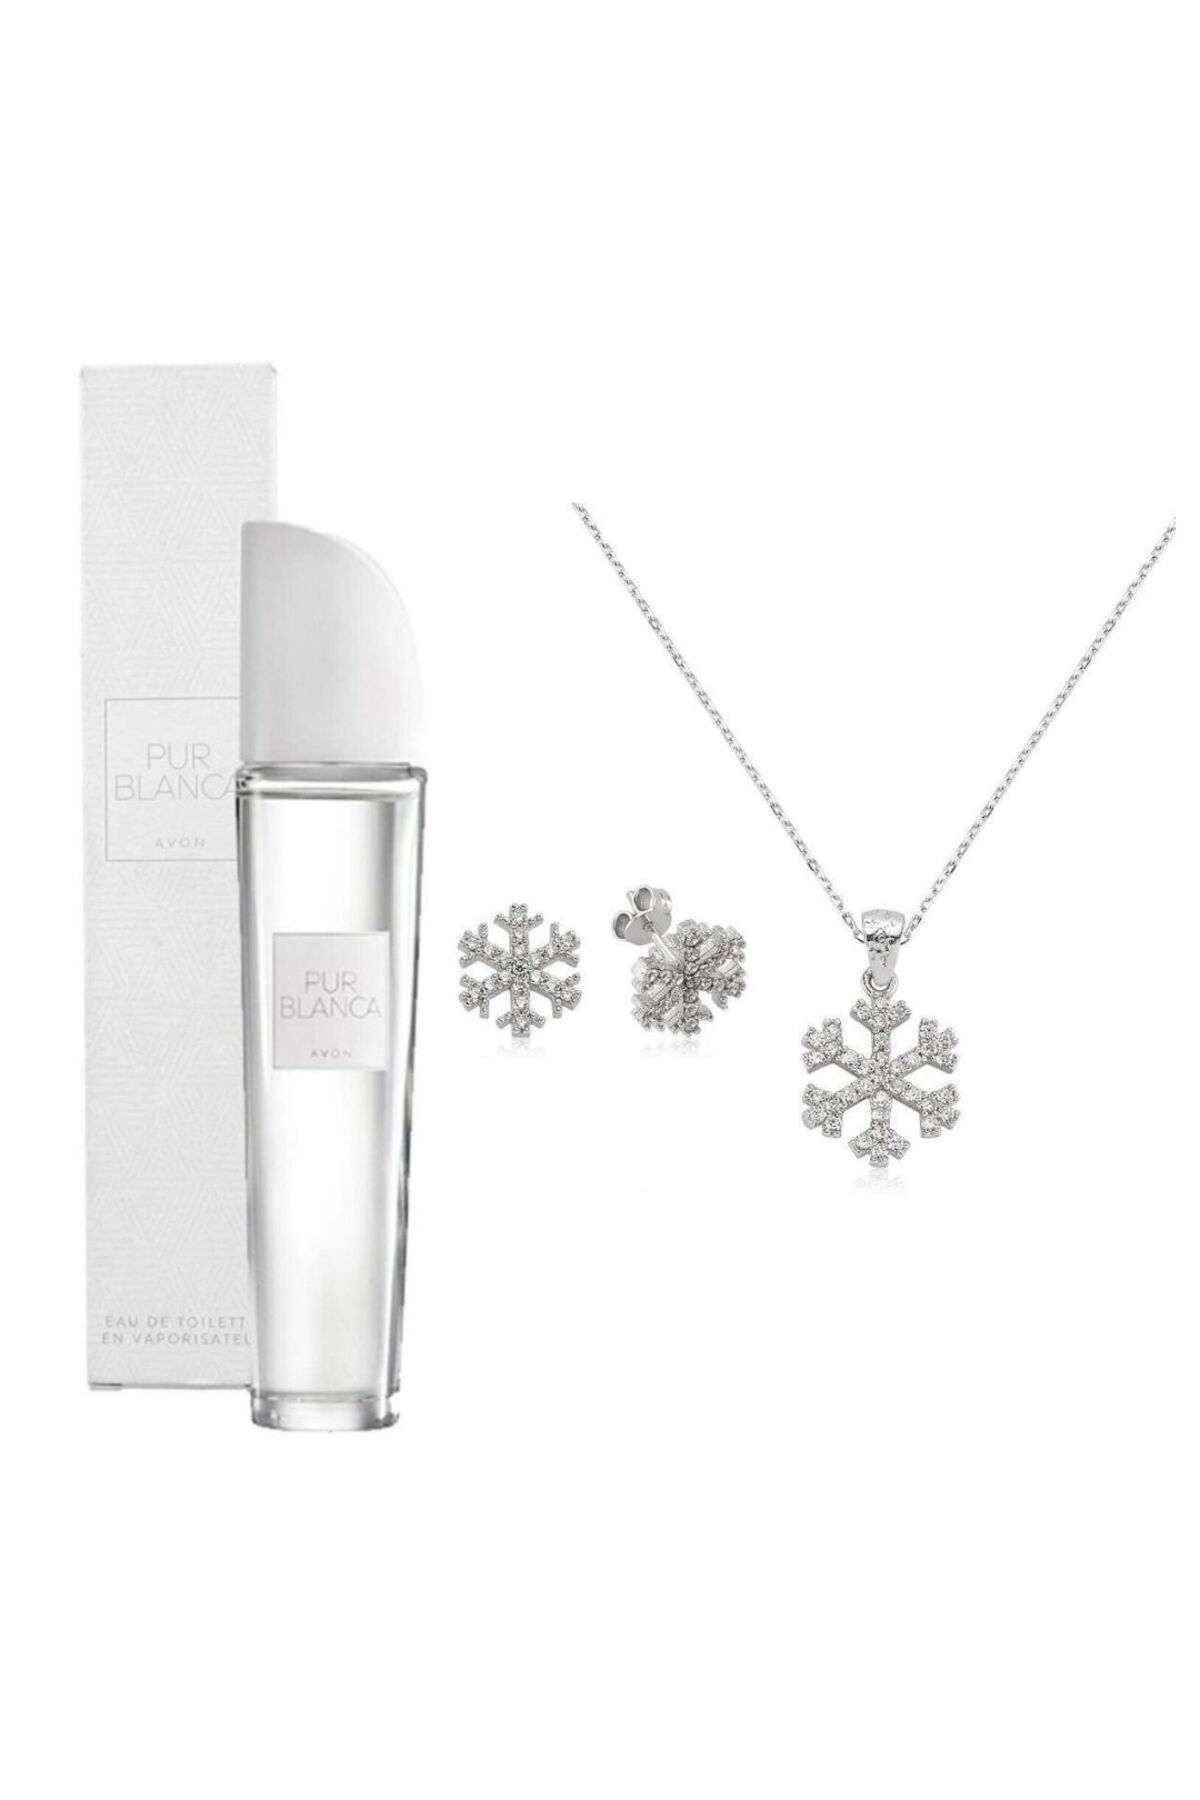 Avon Pur Blanca Kadın Parfüm EDP 50 ml Gümüş Kar Tanesi Kolye Küpe Seti